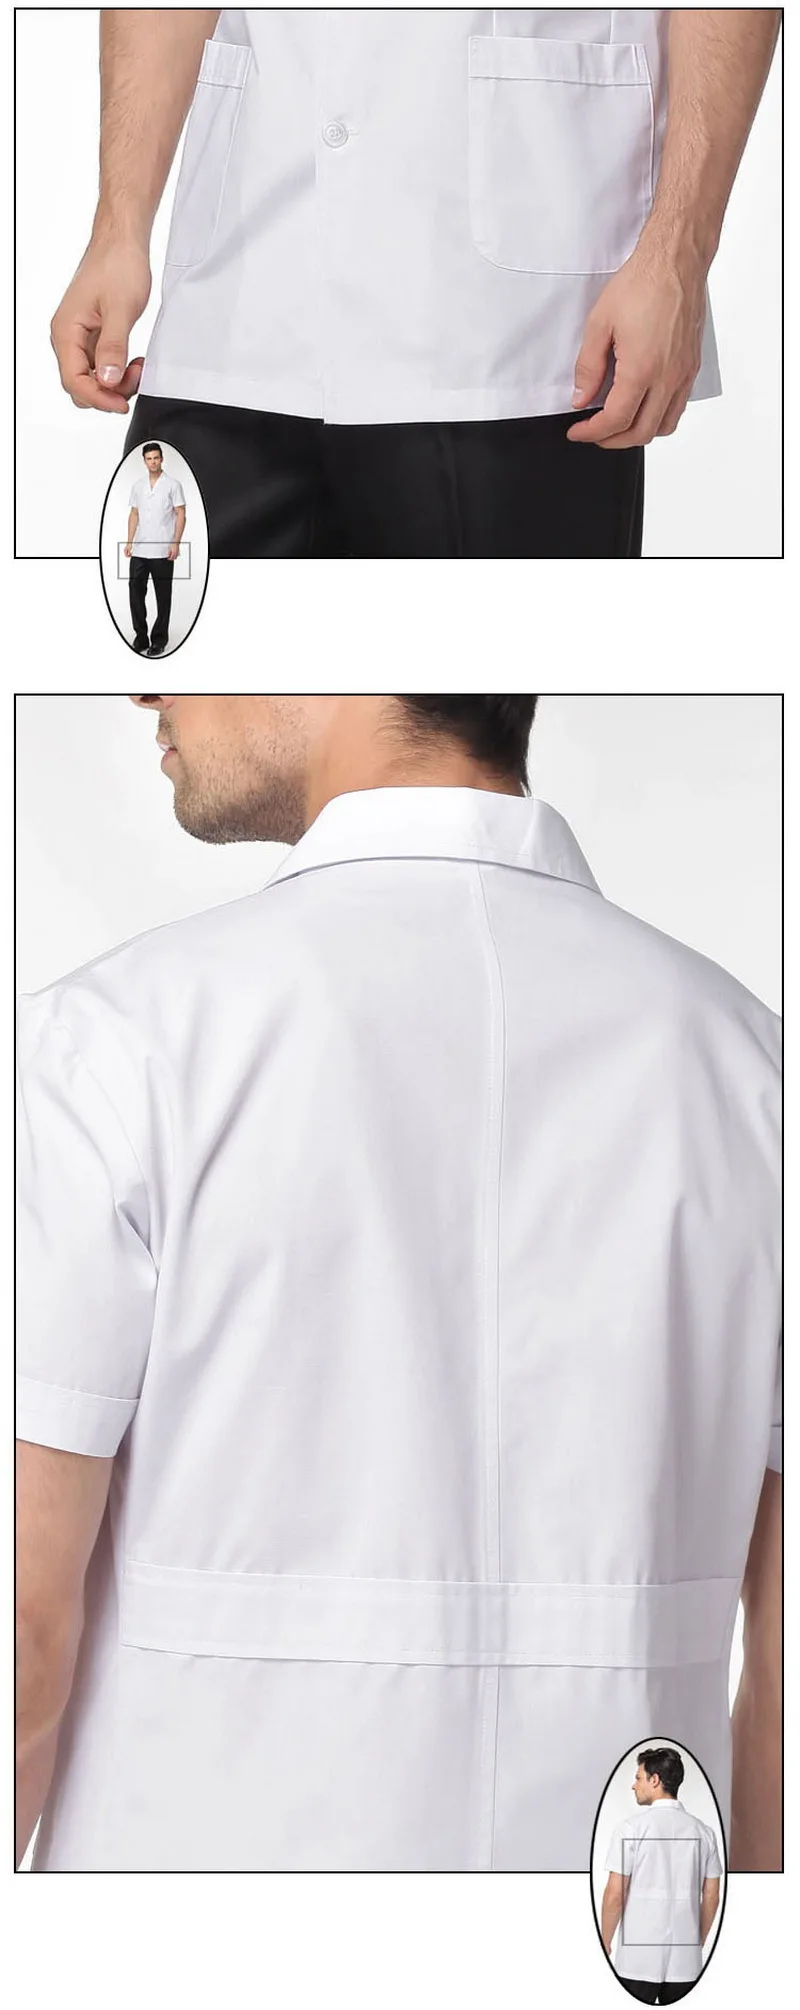 Для мужчин Доктор Медсестры Белый Топ пальто костюм воротник короткий рукав скраб медицинская Униформа Клиническая медицинская лаборатория больница фармация Спецодежда